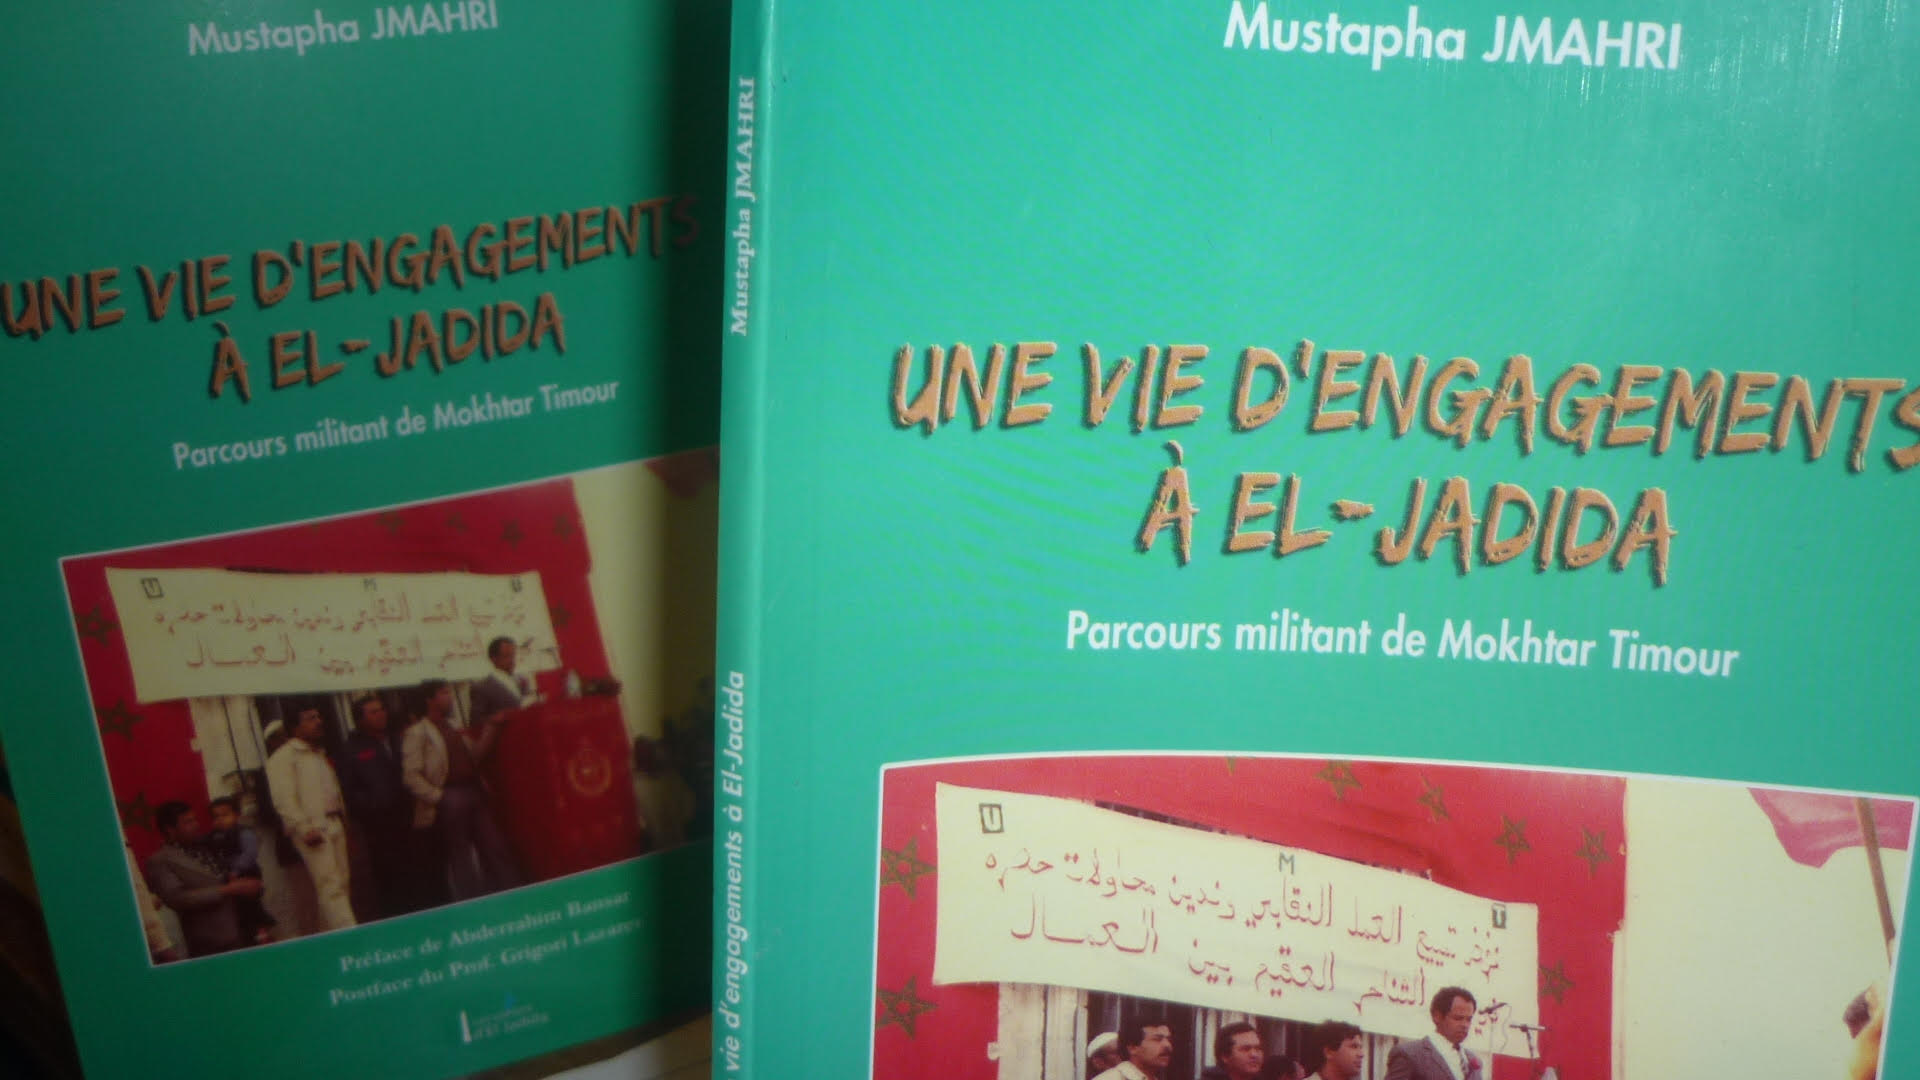 La signification du militantisme dans le livre “Une vie d’ engagements à El Jadida ”